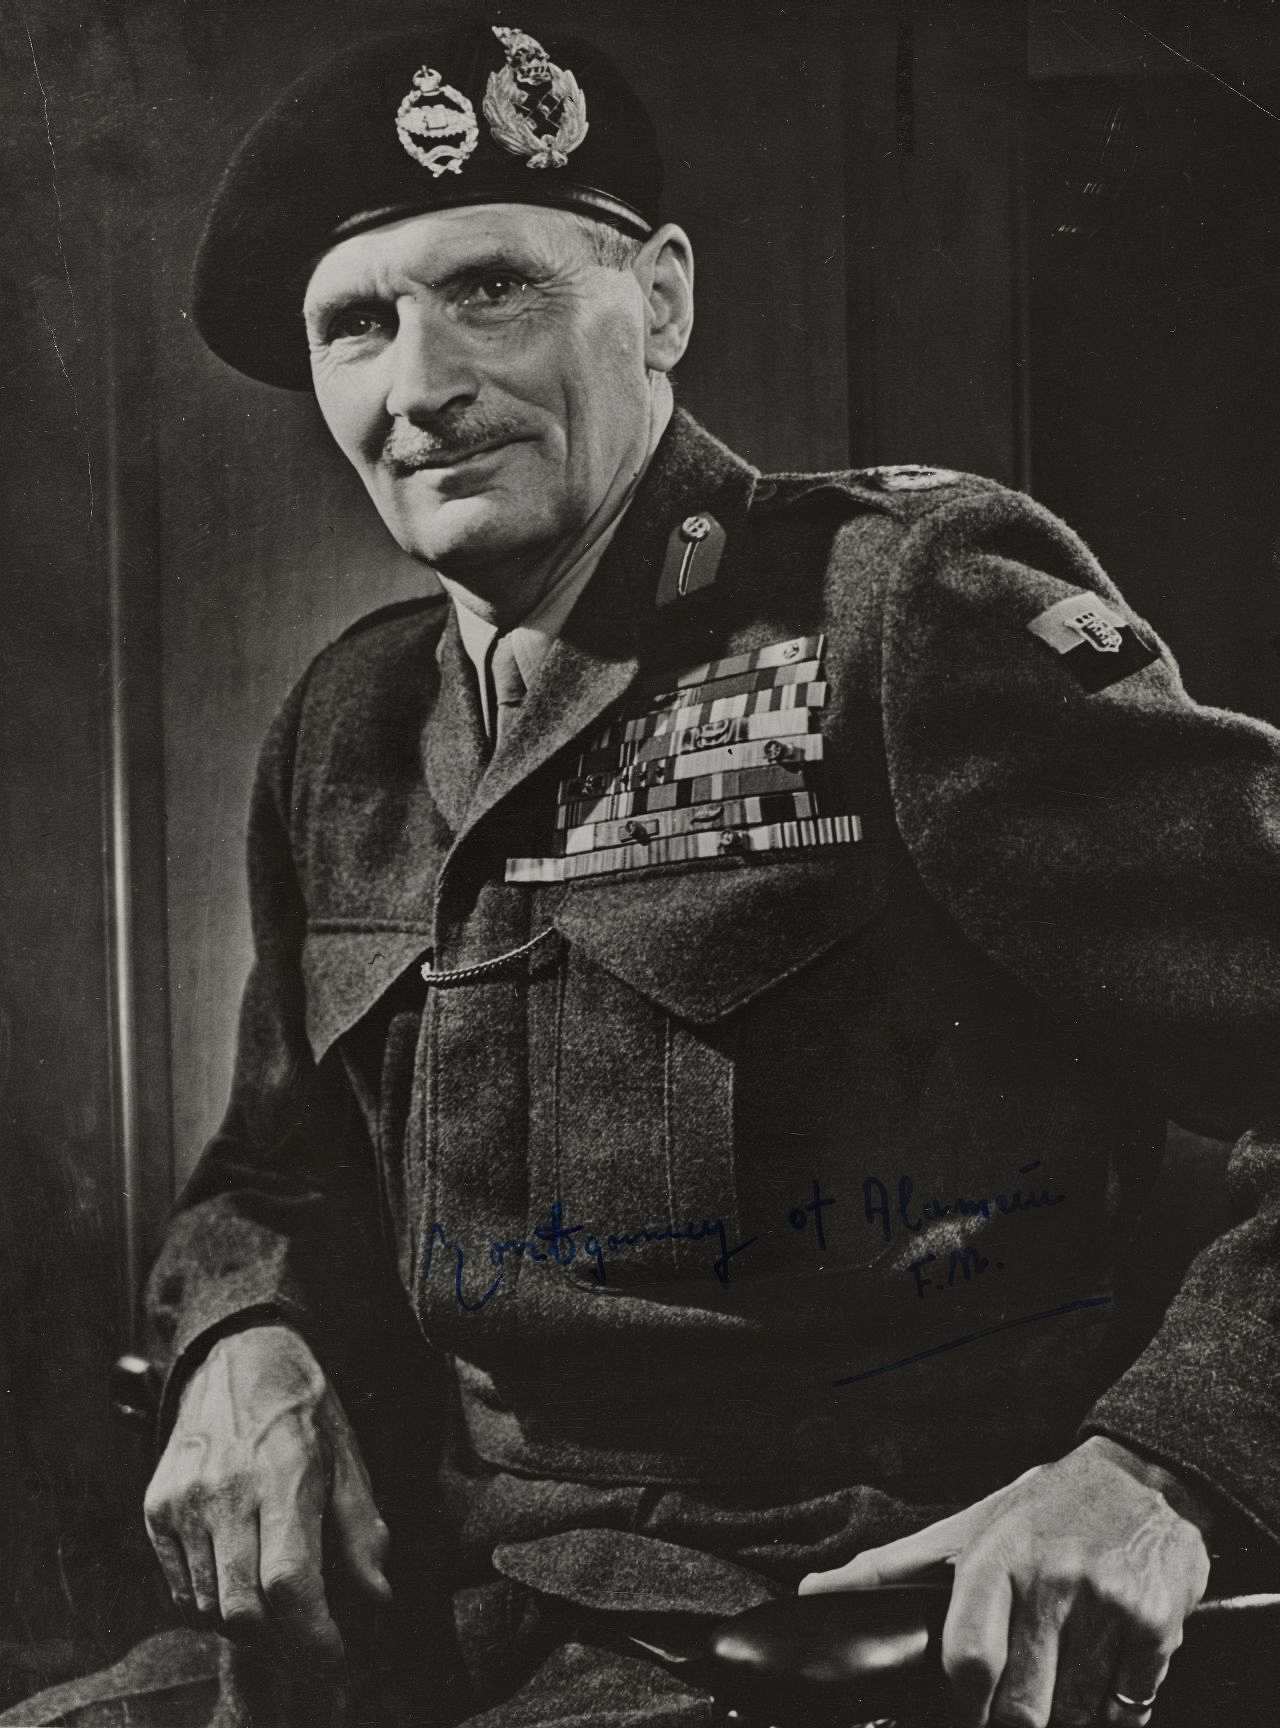 Porträtfoto von Feldmarschall Bernard L. Montgomery, Oberbefehlshaber der britischen Streitkräfte und Mitglied im Alliierten Kontrollrat, 1946-1951.